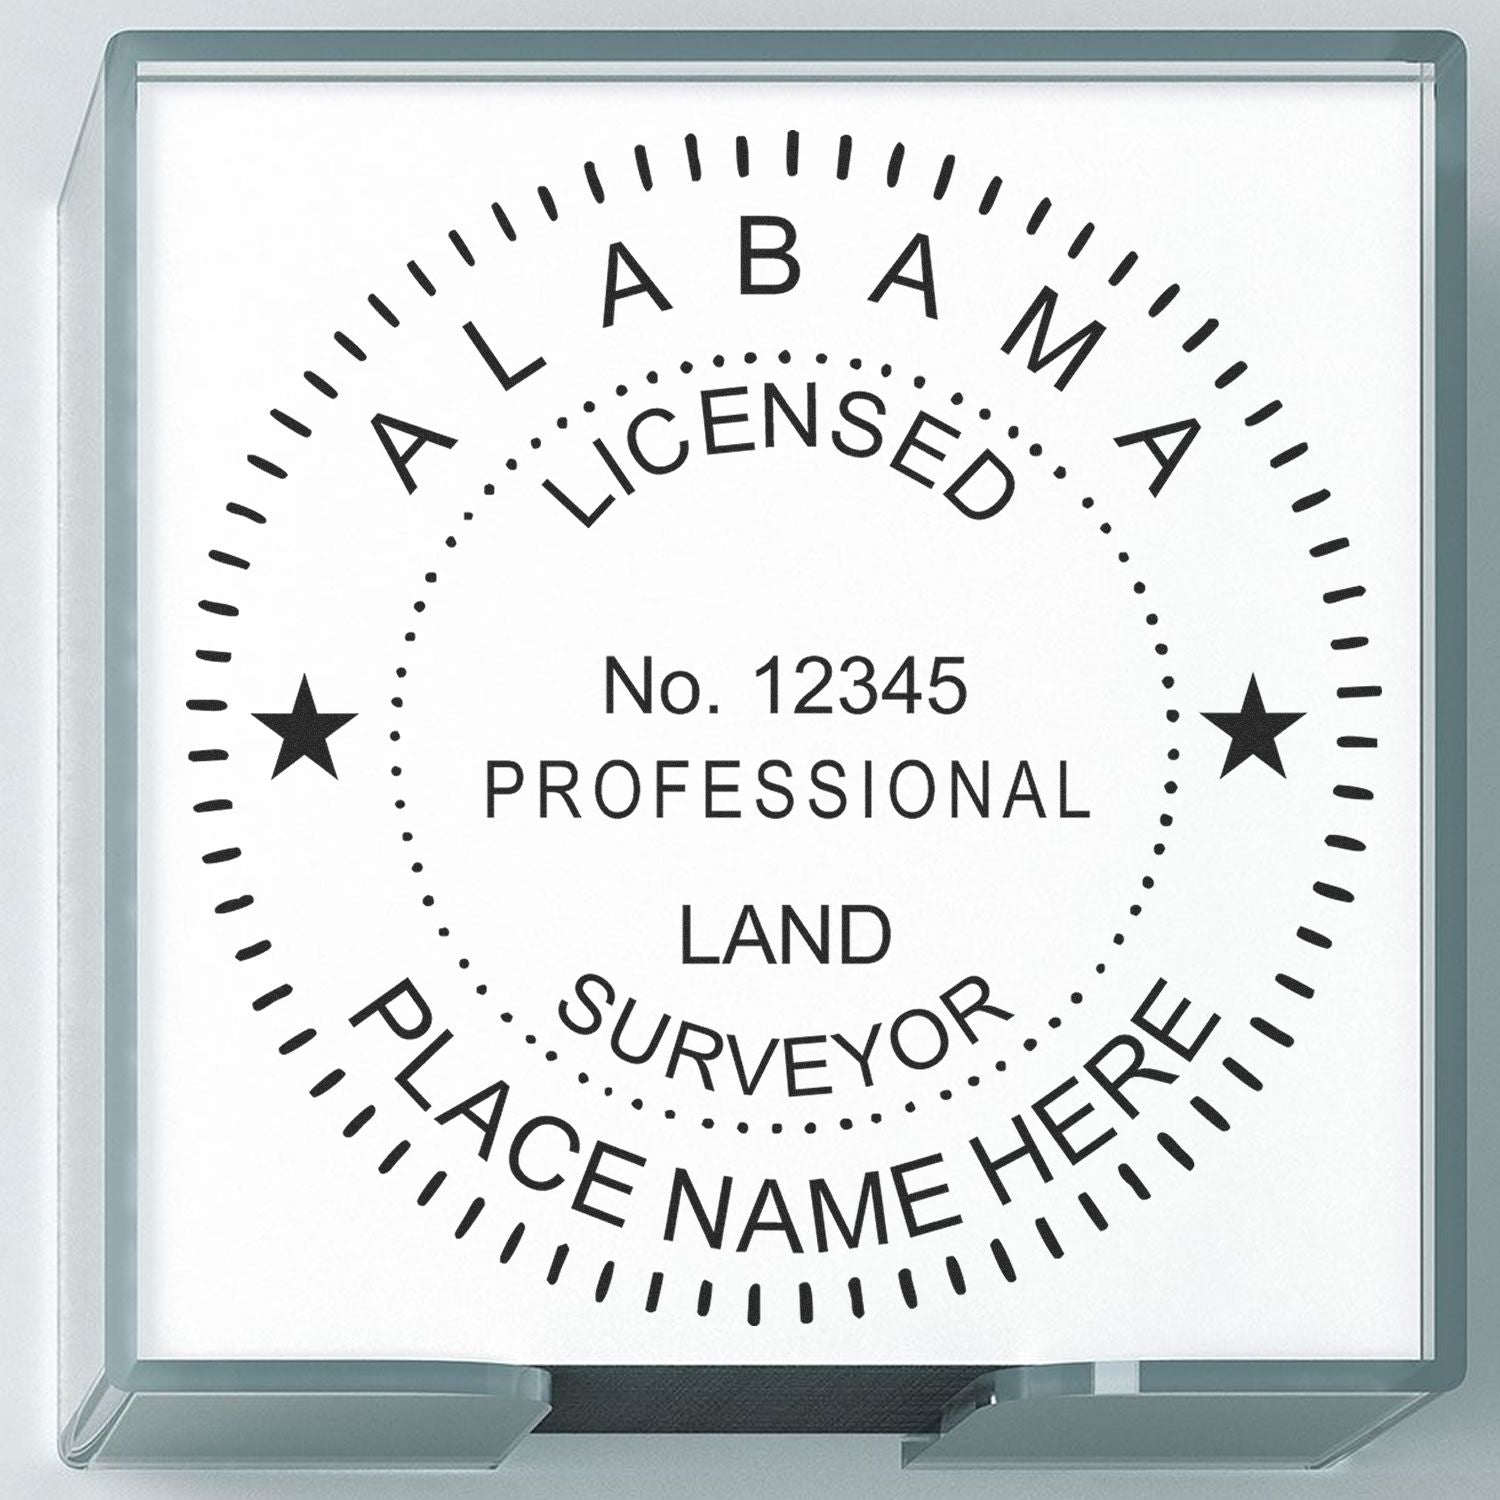 Alabama Land Surveyor Seal Stamp In Use Photo